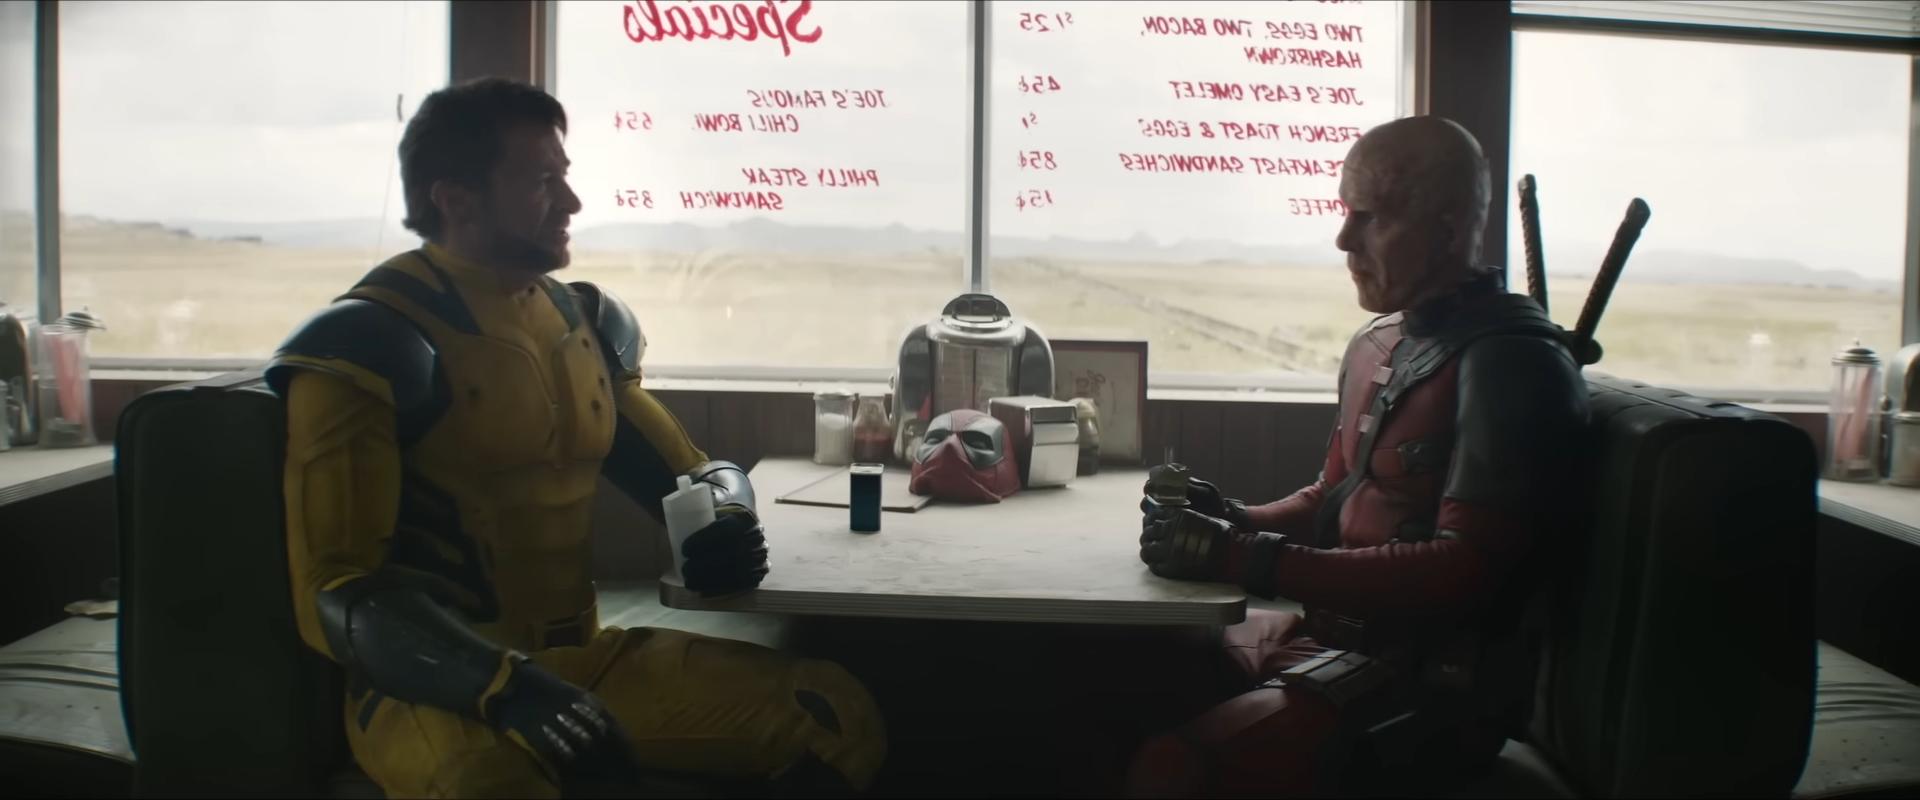 Megőrülnek a rajongók Ladypooltól a Deadpool és Wolverine új előzetesében